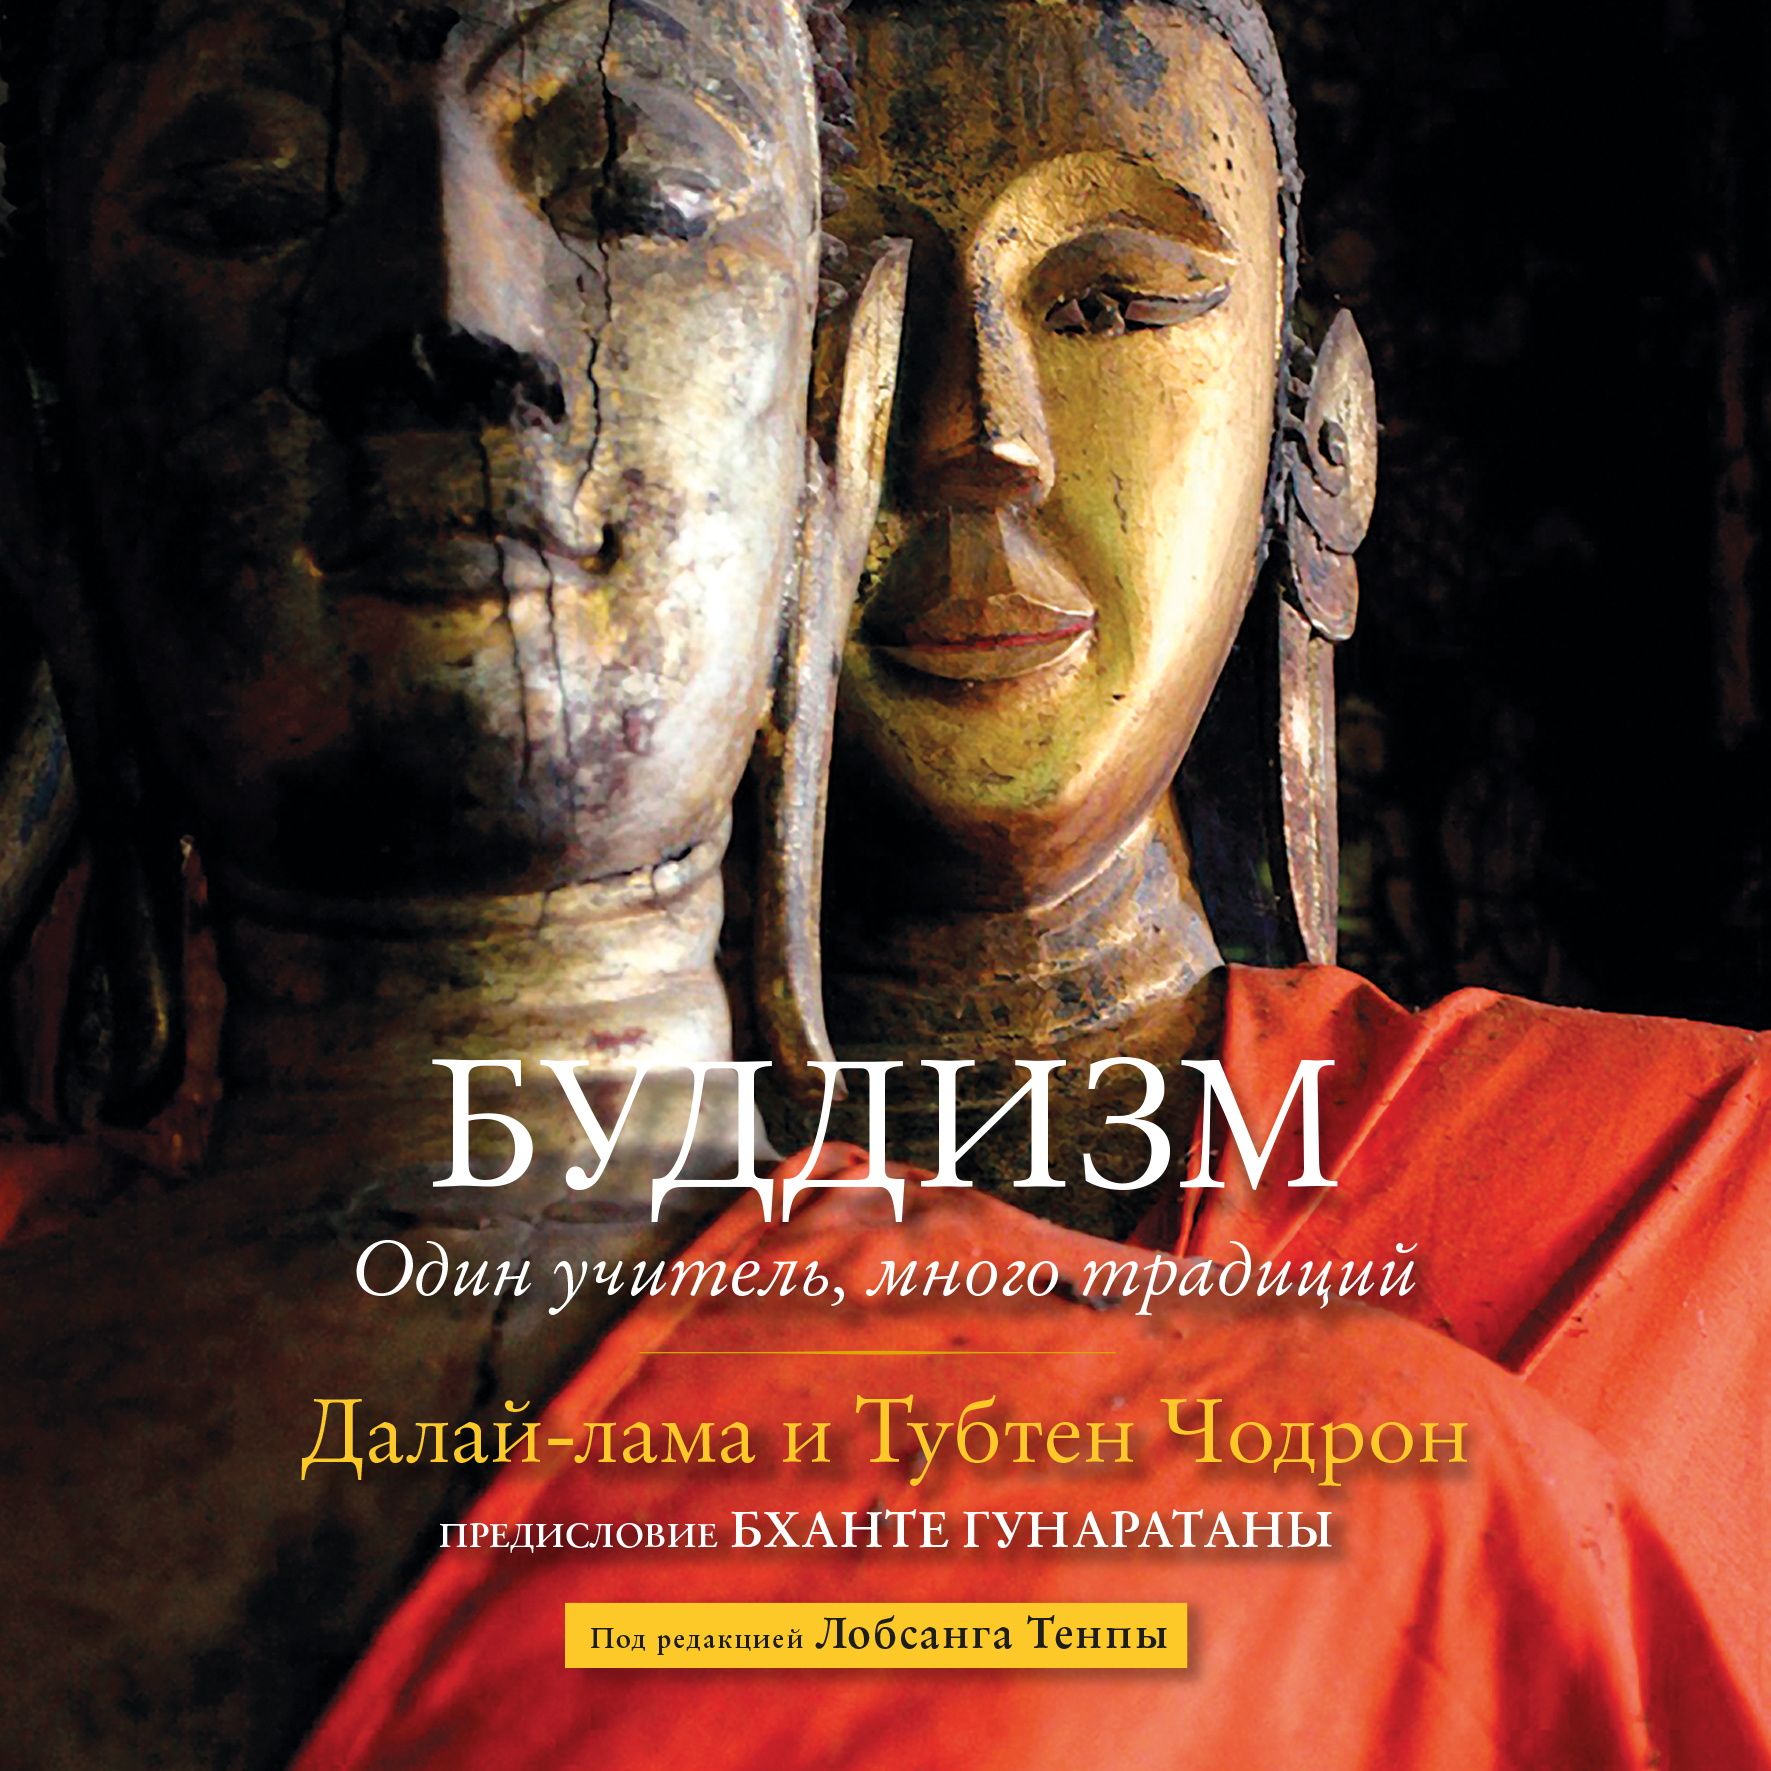 Скачать Буддизм. Один учитель, много традиций - Далай-лама XIV